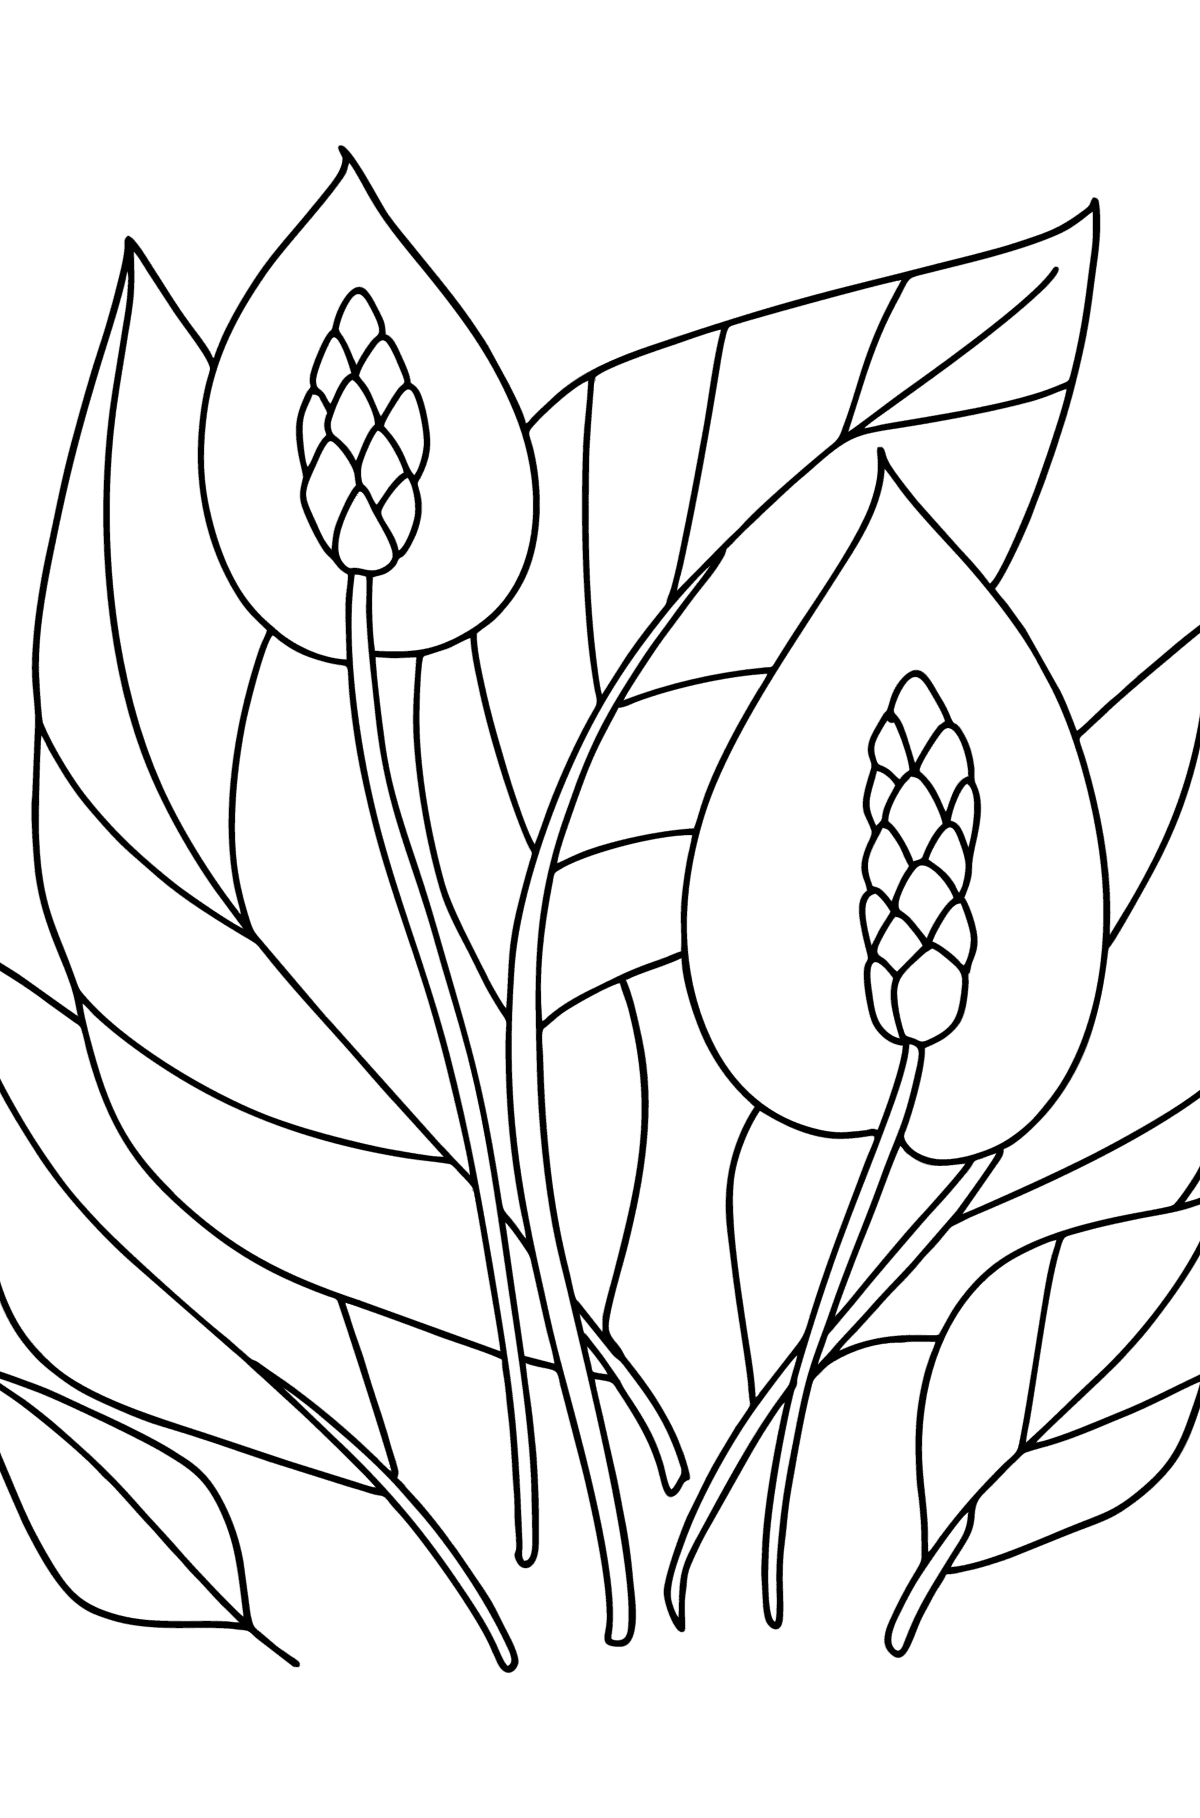 Tegning til fargelegging Spathiphyllum - Tegninger til fargelegging for barn